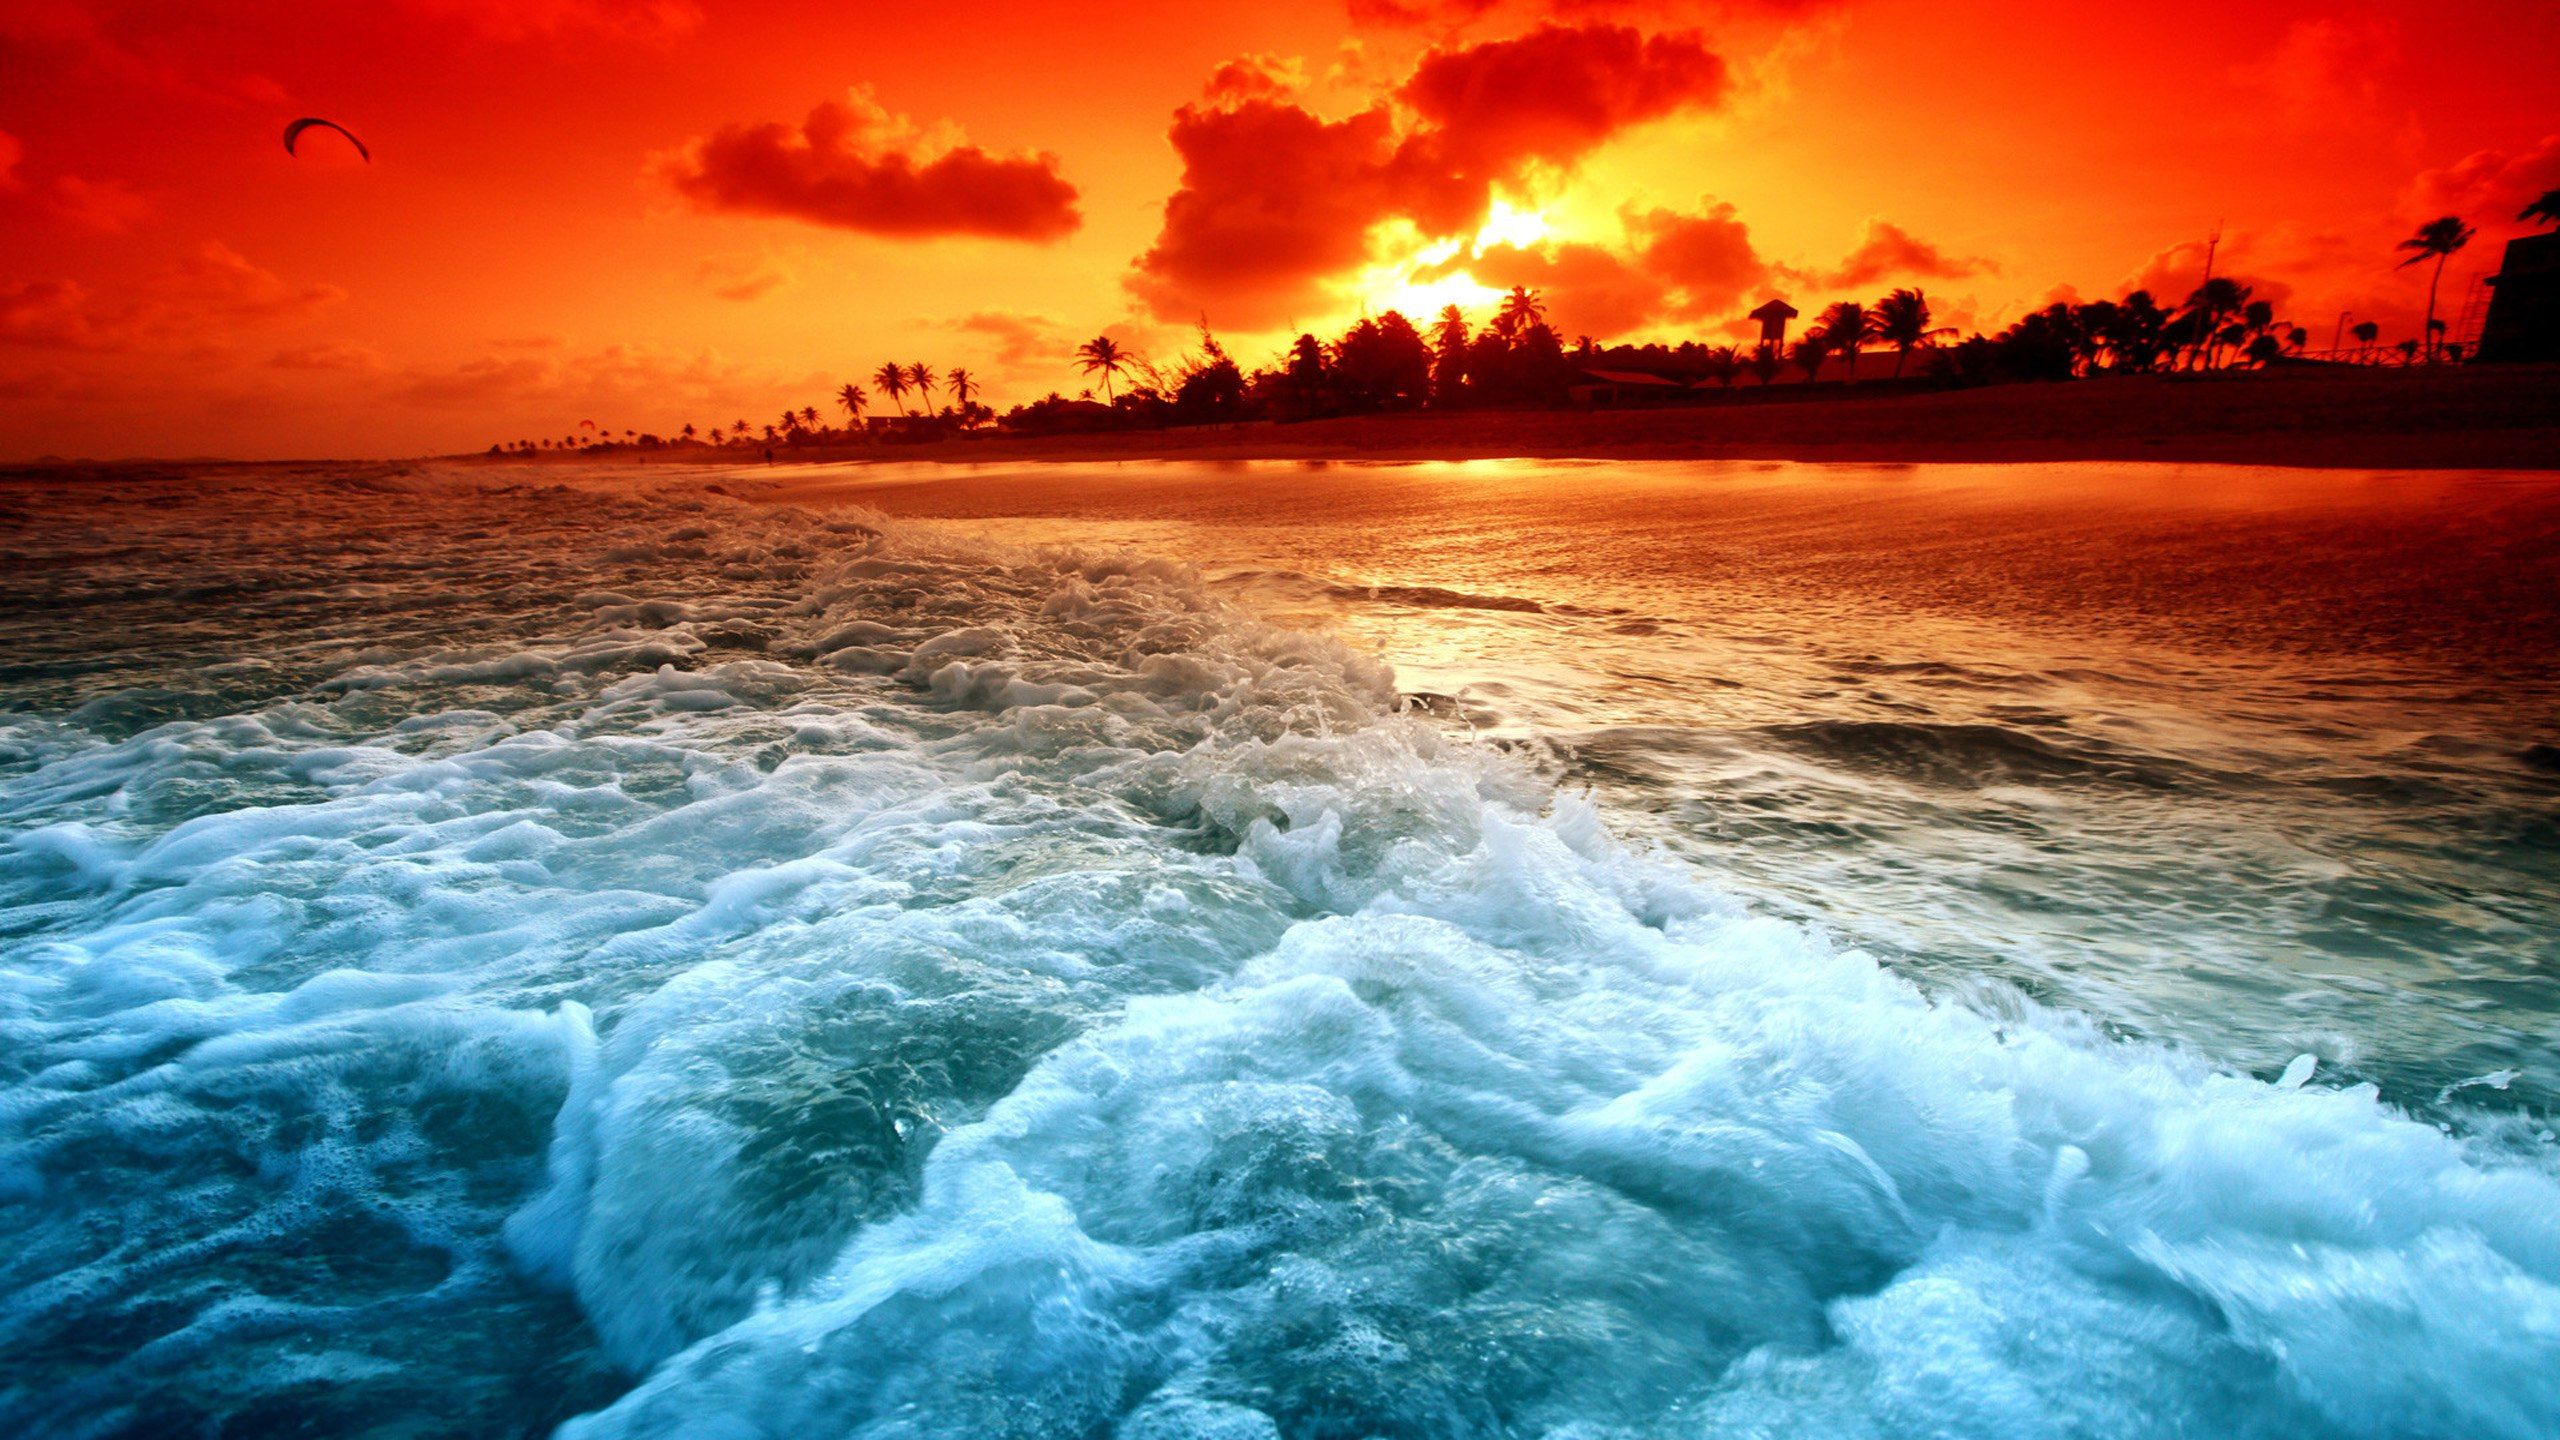 Beautiful beach sunset wallpaper 2560x1440 - (#25721) - High ...